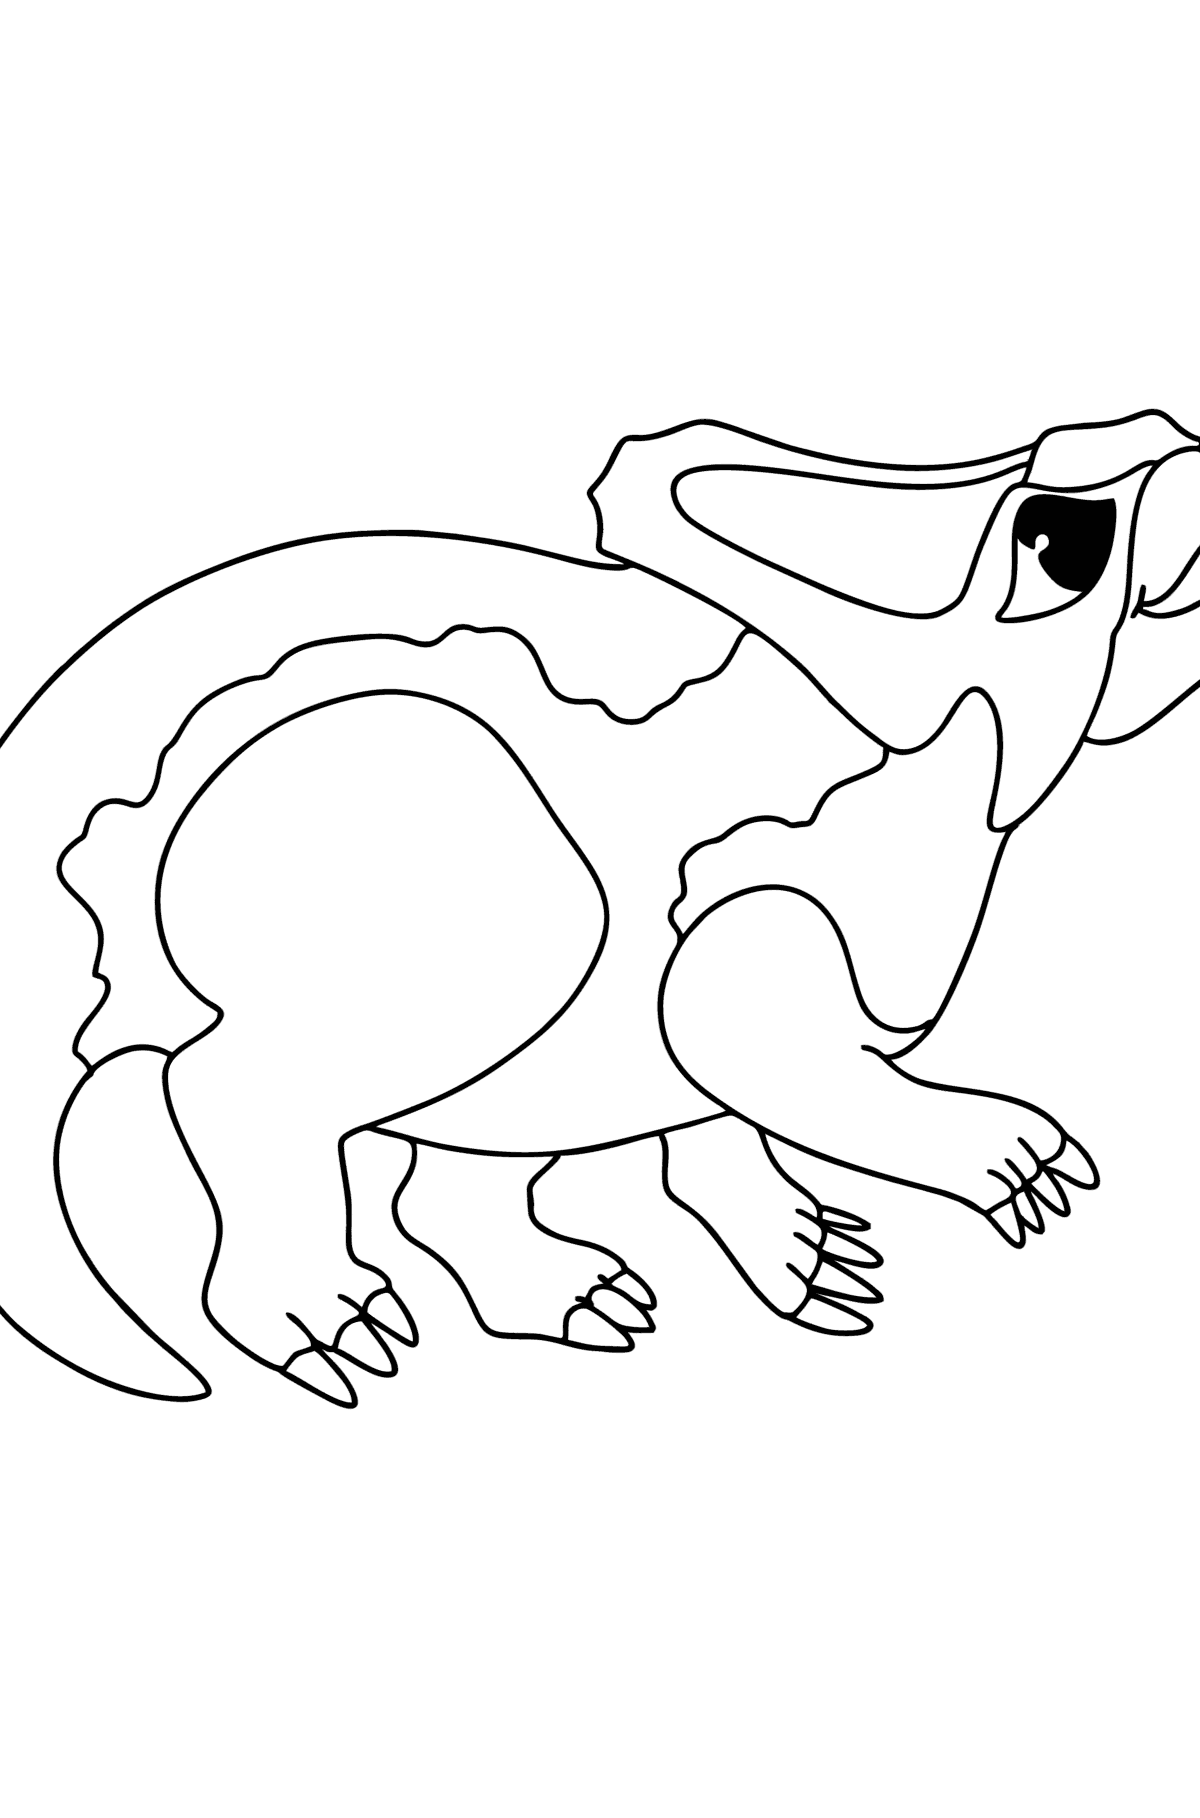 Kleurplaat protoceratops - kleurplaten voor kinderen